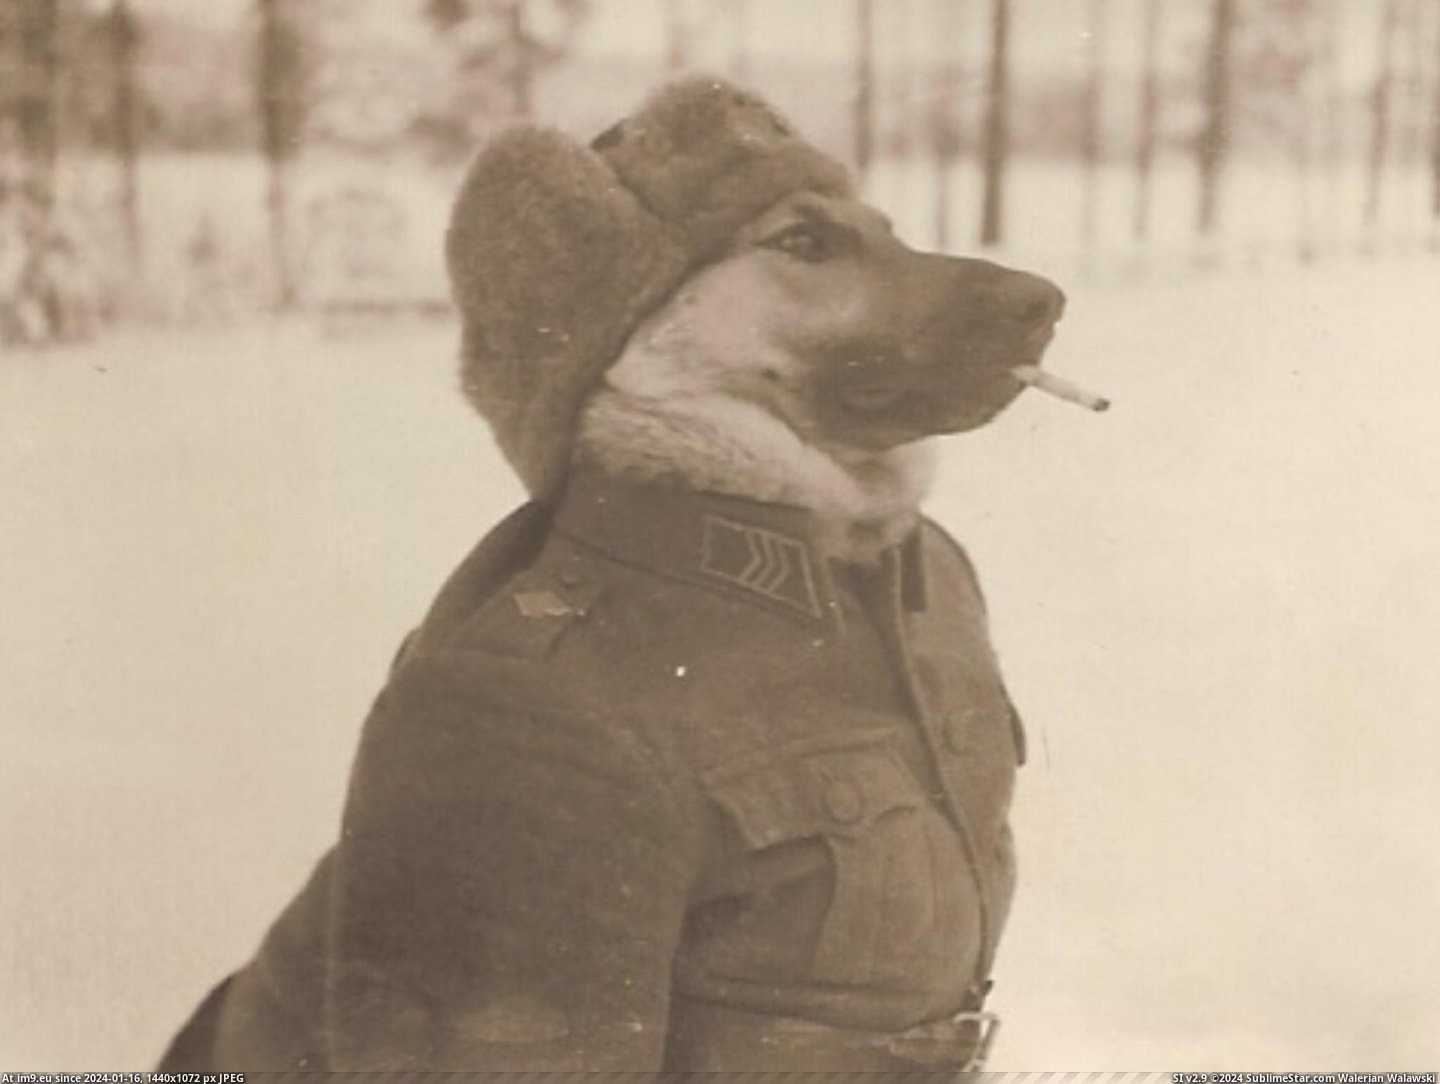 #World #Finnish #Sergeant #War [Pics] Finnish sergeant in second world war. Pic. (Obraz z album My r/PICS favs))